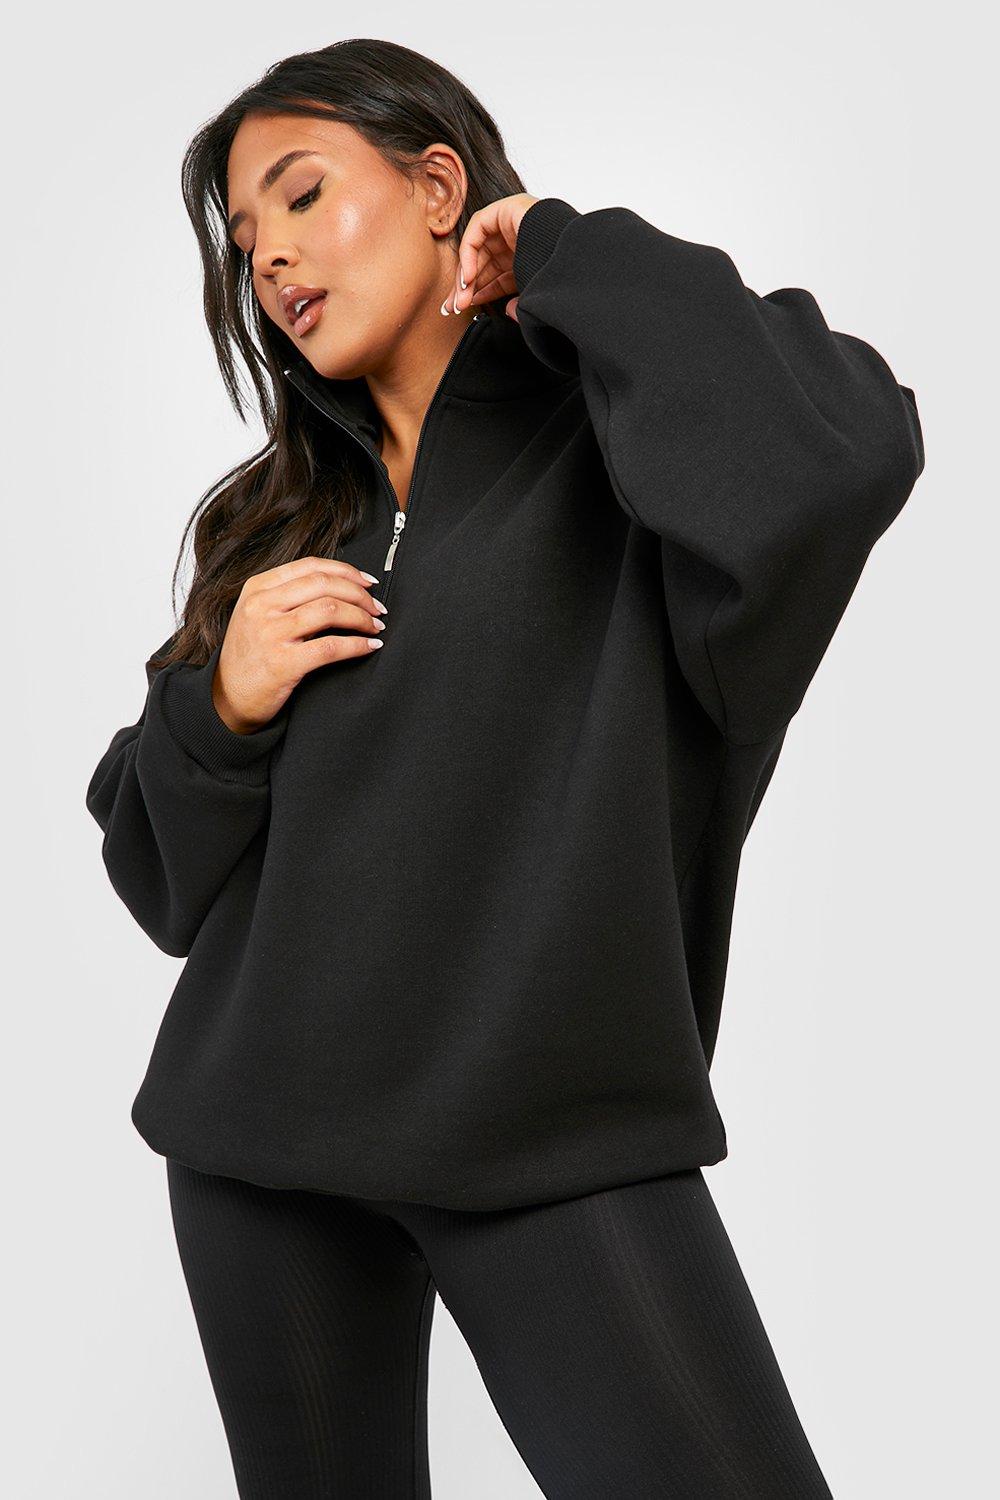  Onlypuff 3X Sweatshirt For Women Plus Size Half Zip